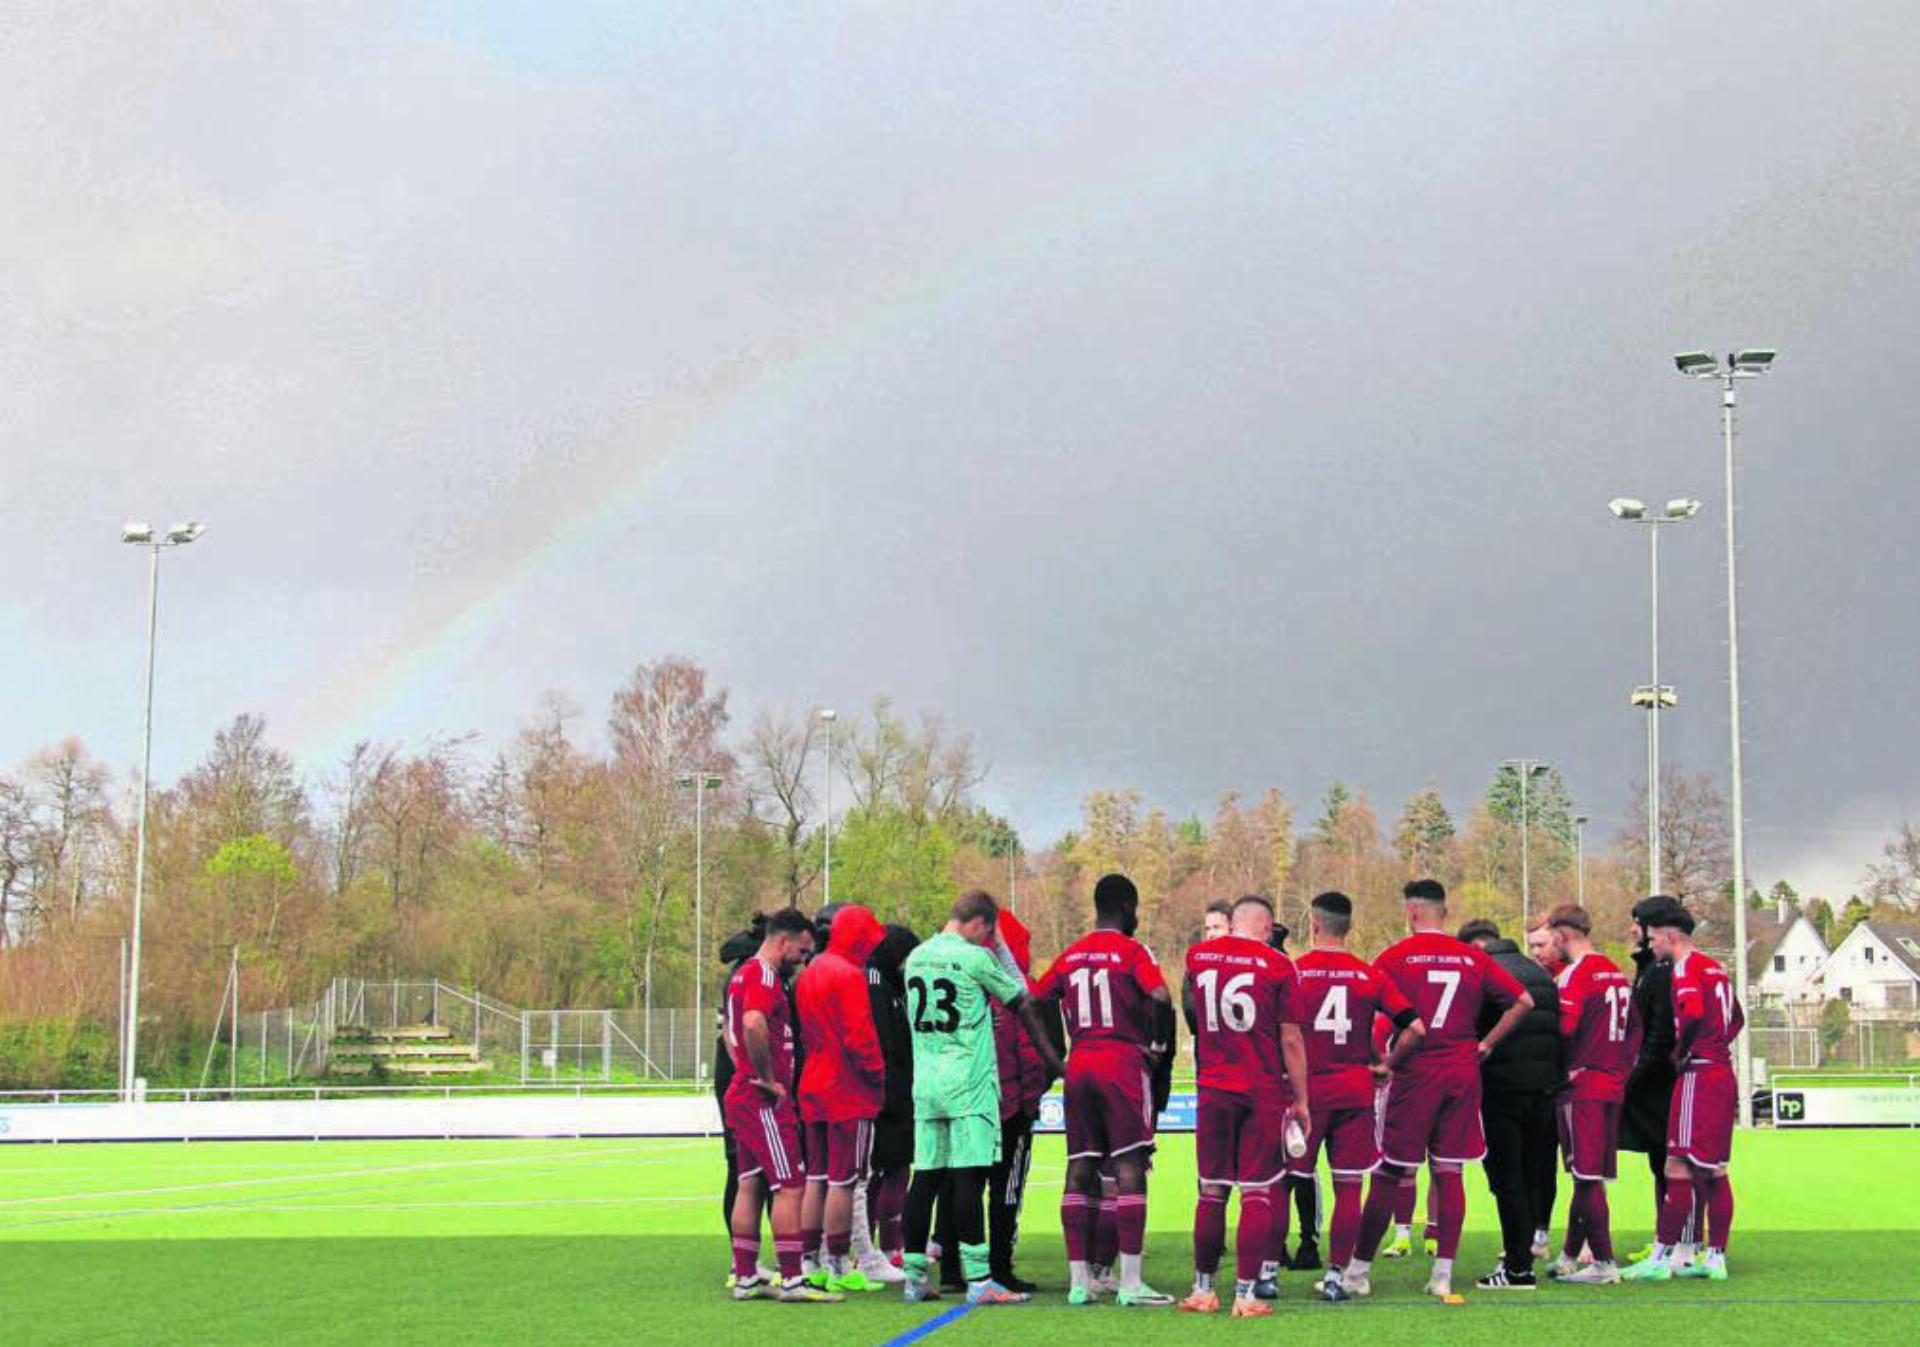 Der Regenbogen der Hoffnung verblasst immer mehr. Die Zeichen beim FC Muri stehen auf Abstieg. Bild: pf